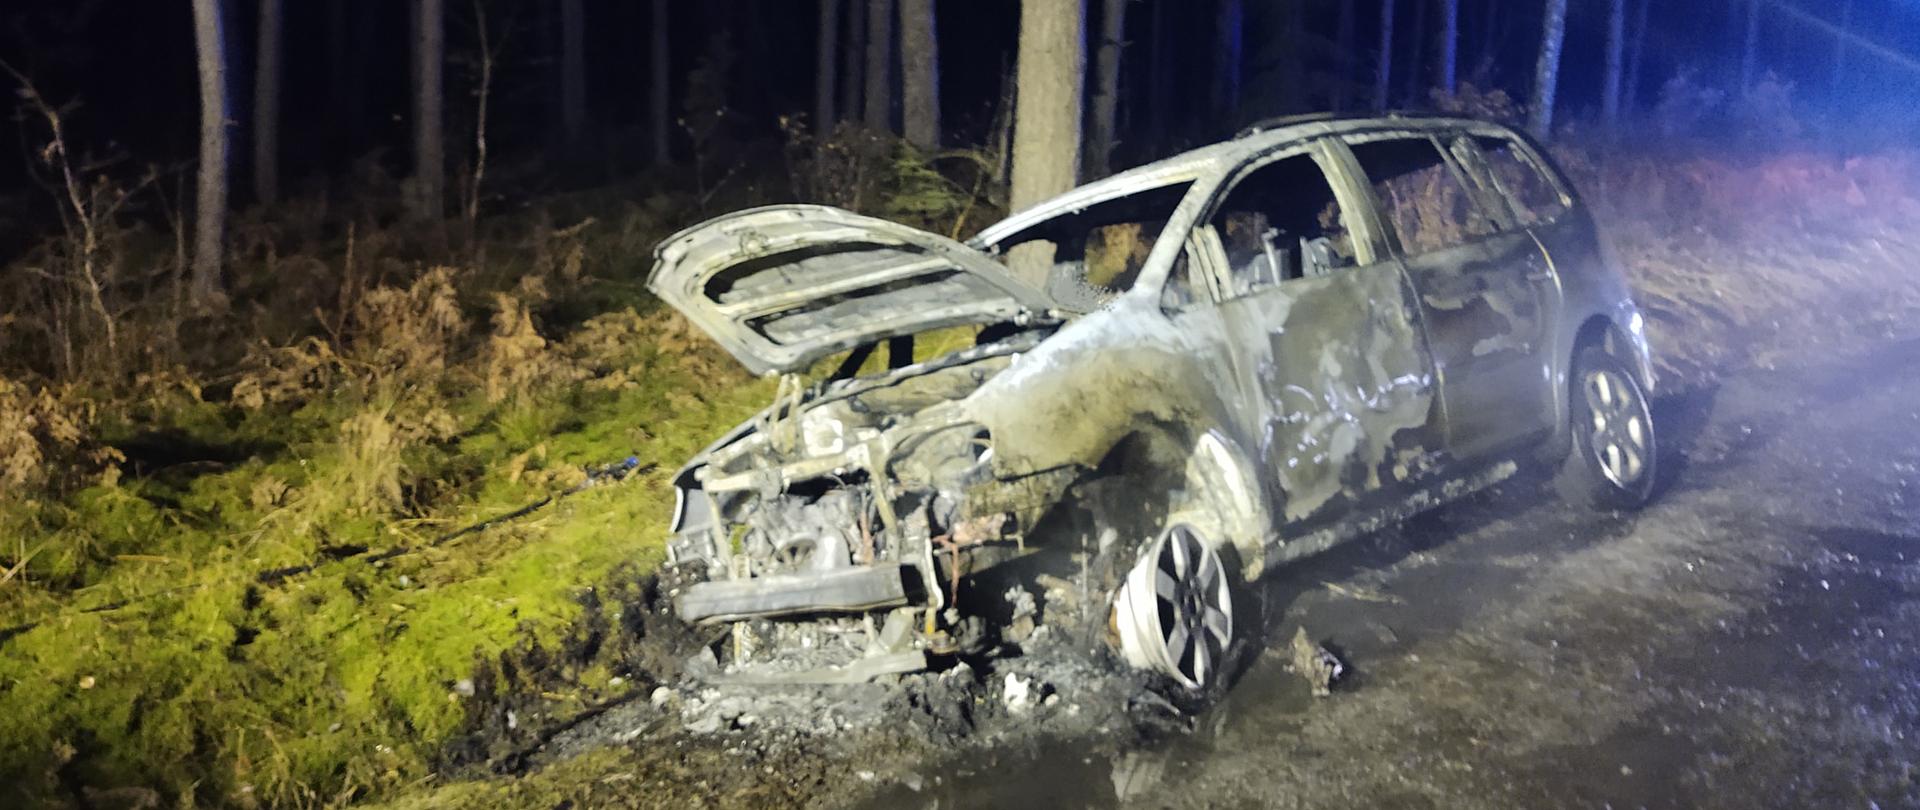 Pożar samochodu - Muszkowo